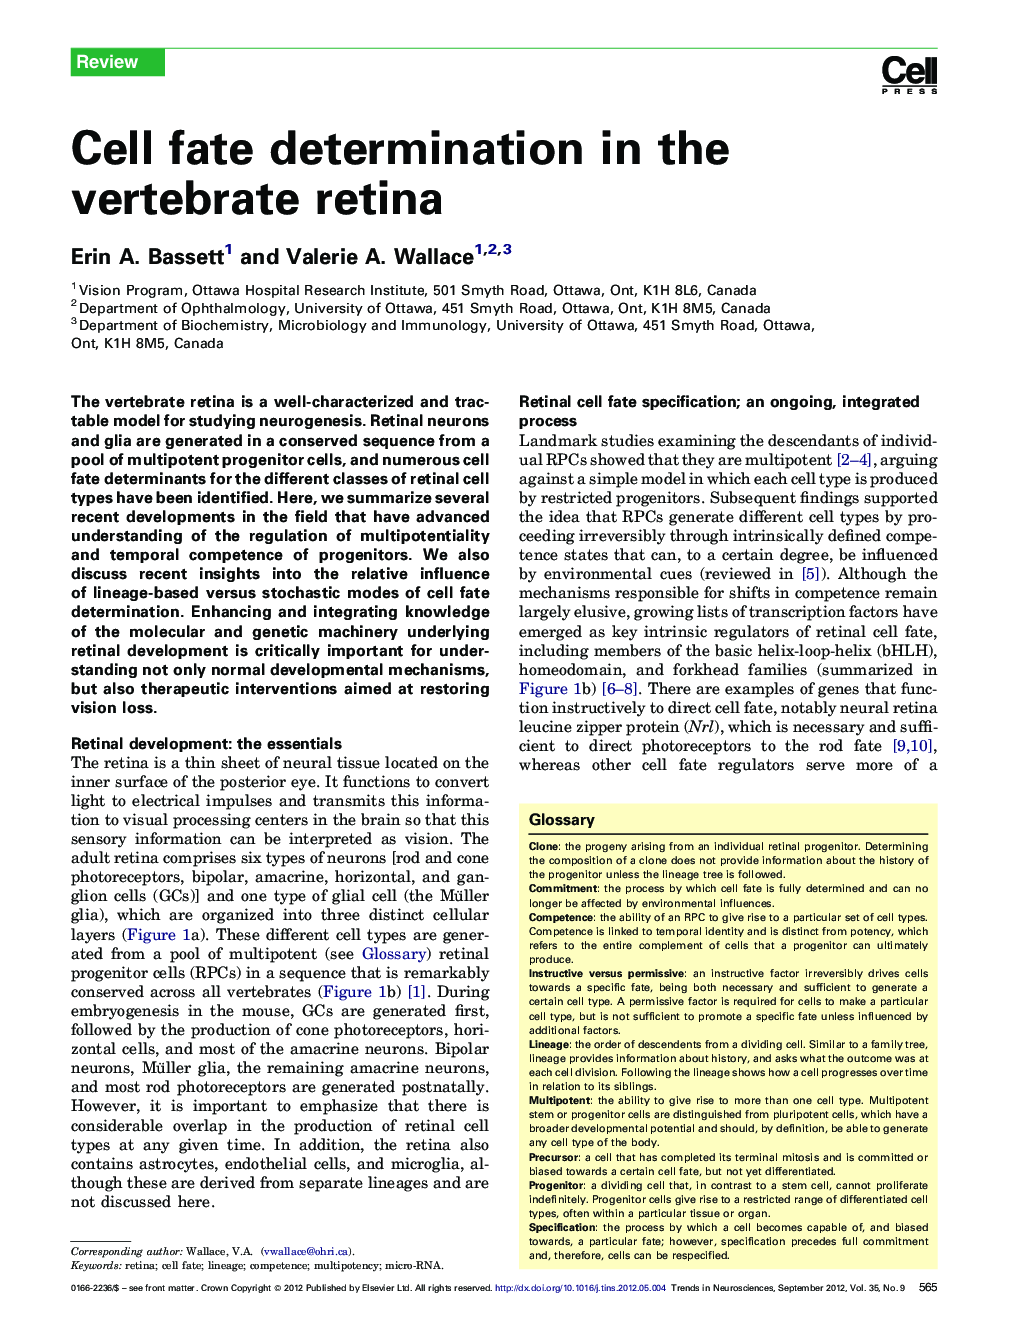 Cell fate determination in the vertebrate retina